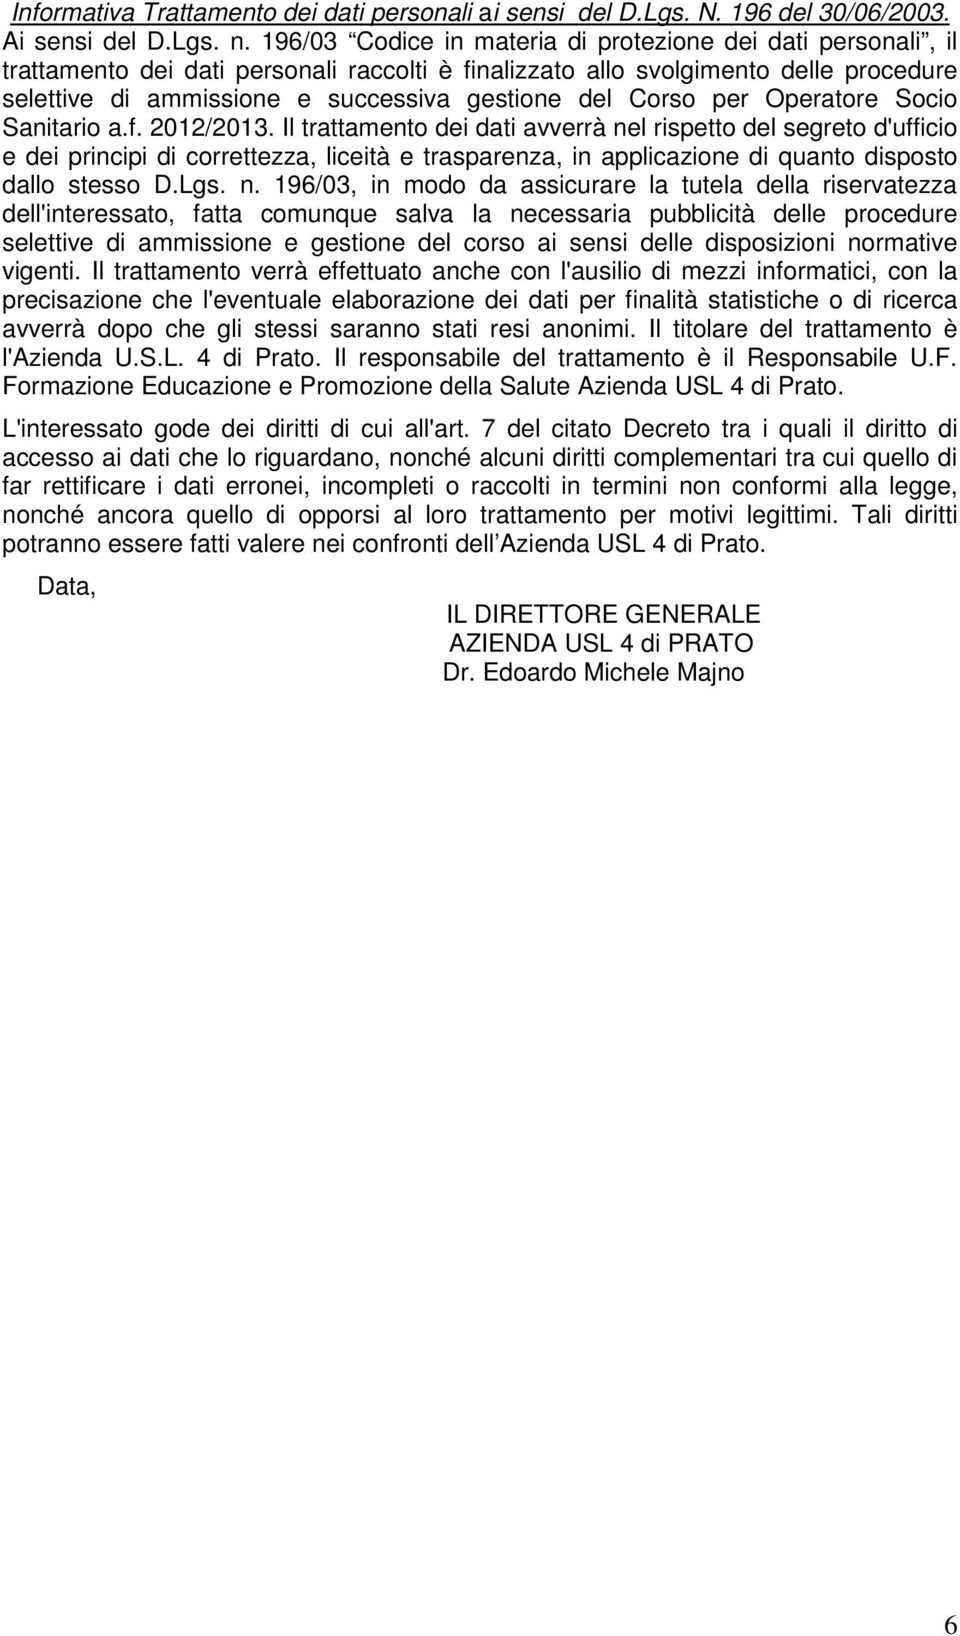 Corso per Operatore Socio Sanitario a.f. 2012/2013.